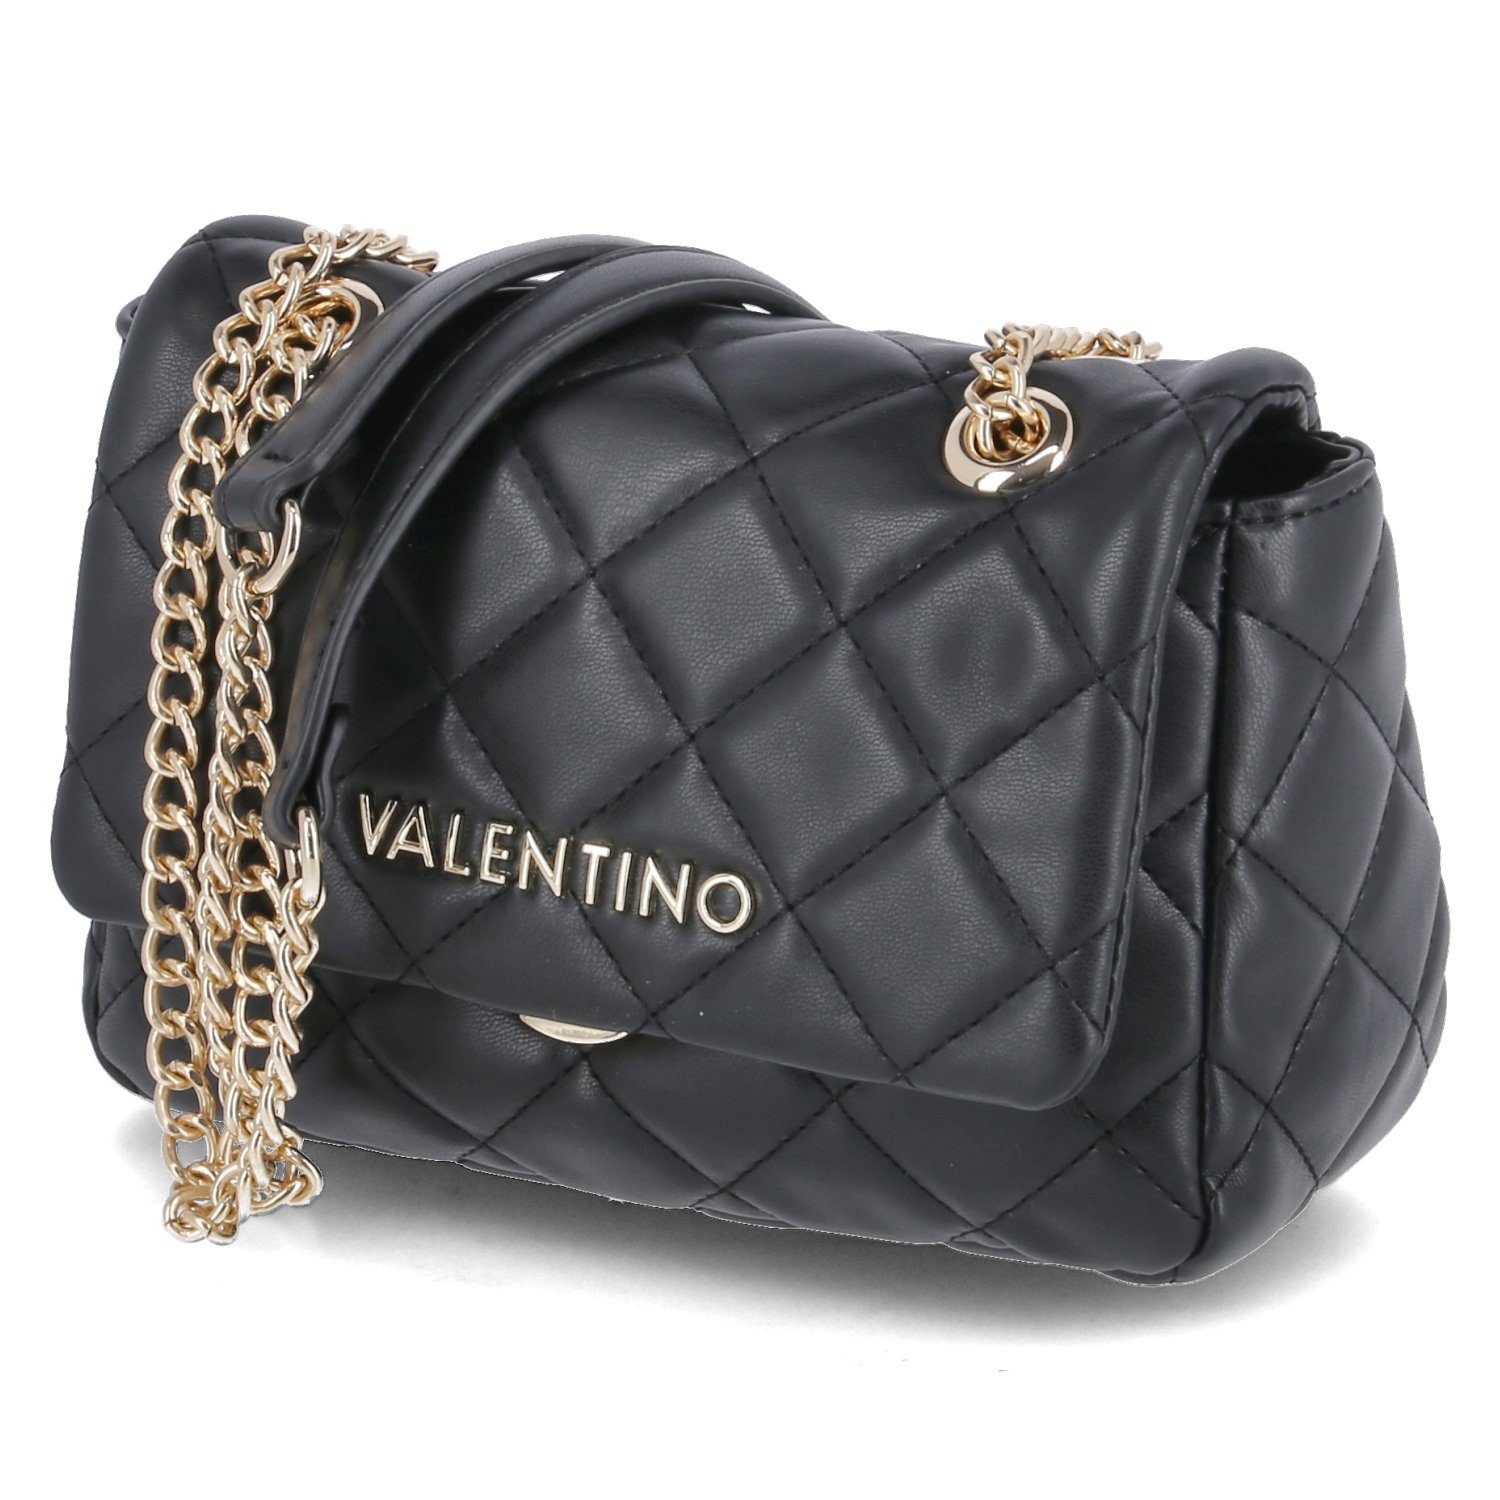 Valentino Handtasche online kaufen | OTTO